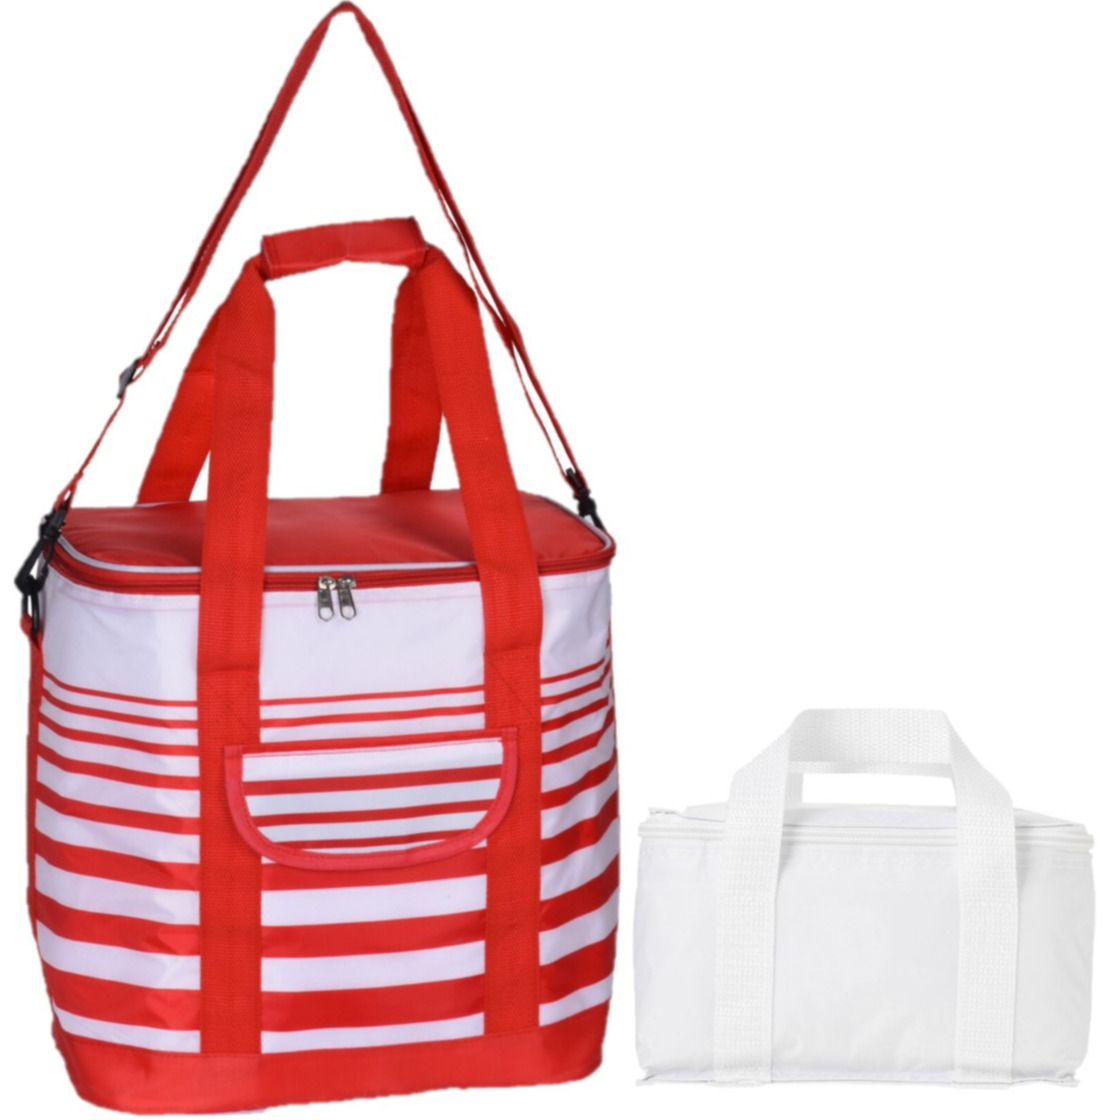 Koeltassen set draagtas-schoudertas rood-wit 24 en 4 liter